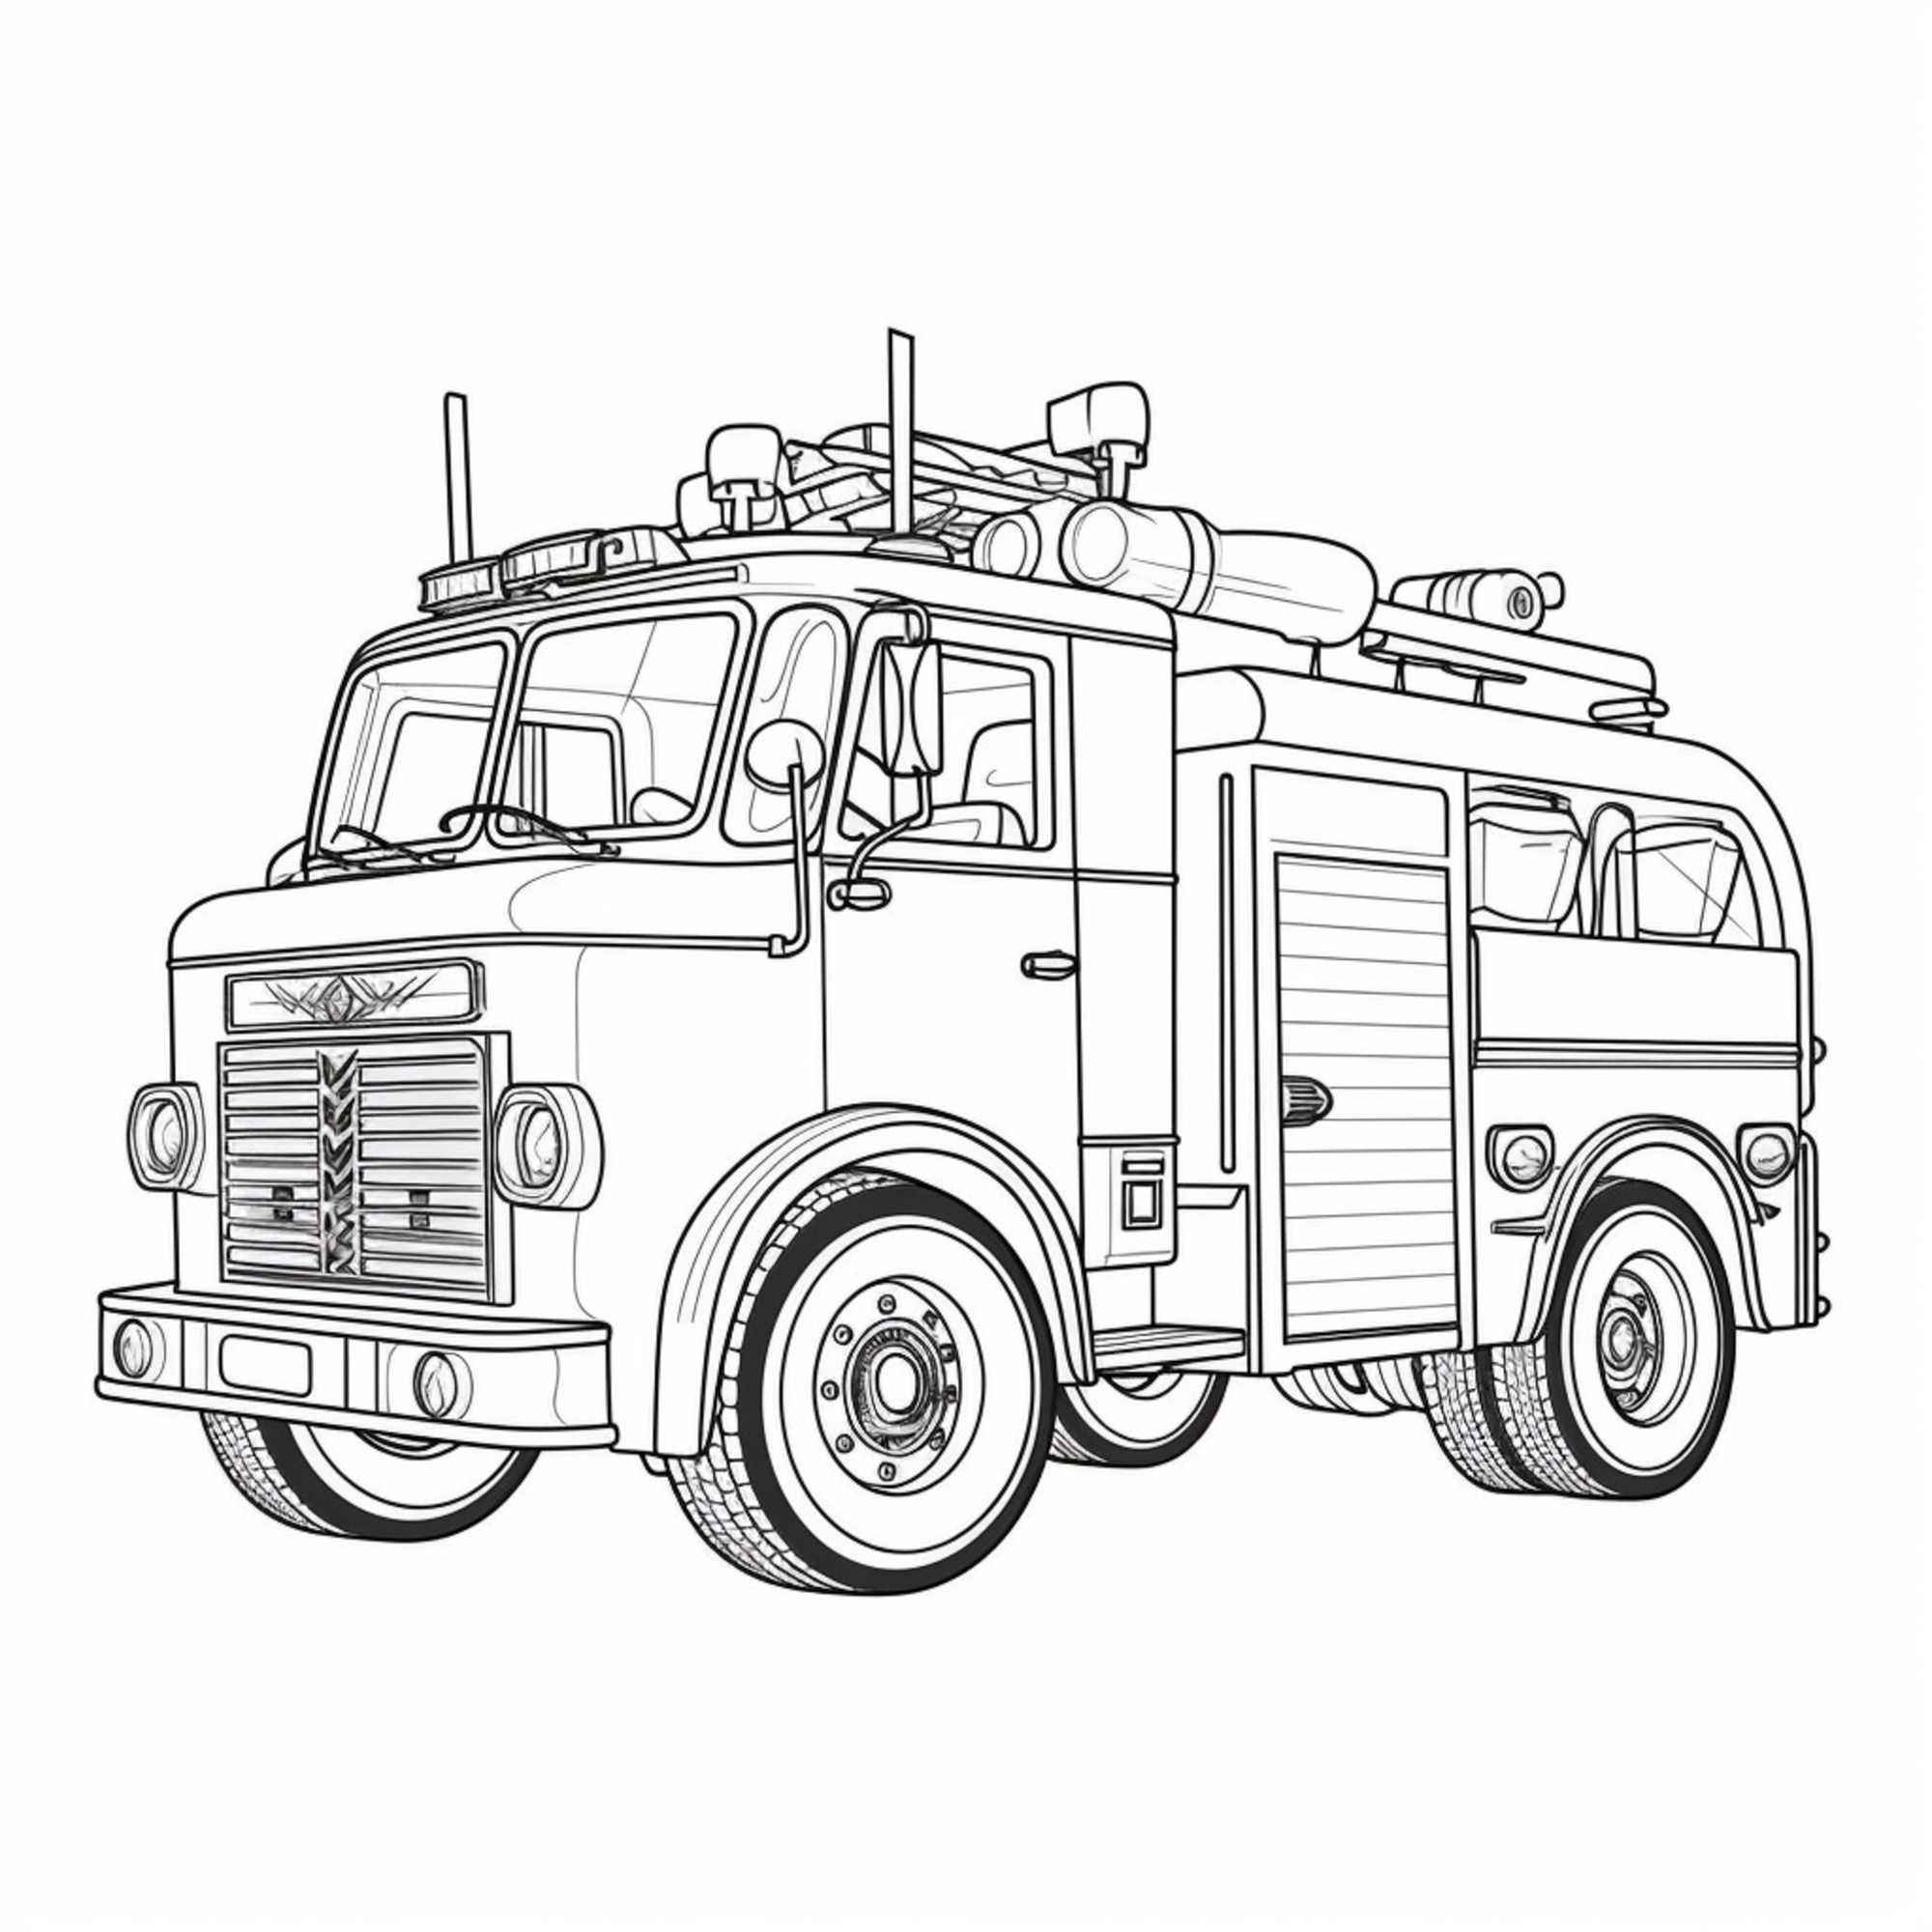 Раскраска для детей: пожарный автомобиль «Пожарный герой»